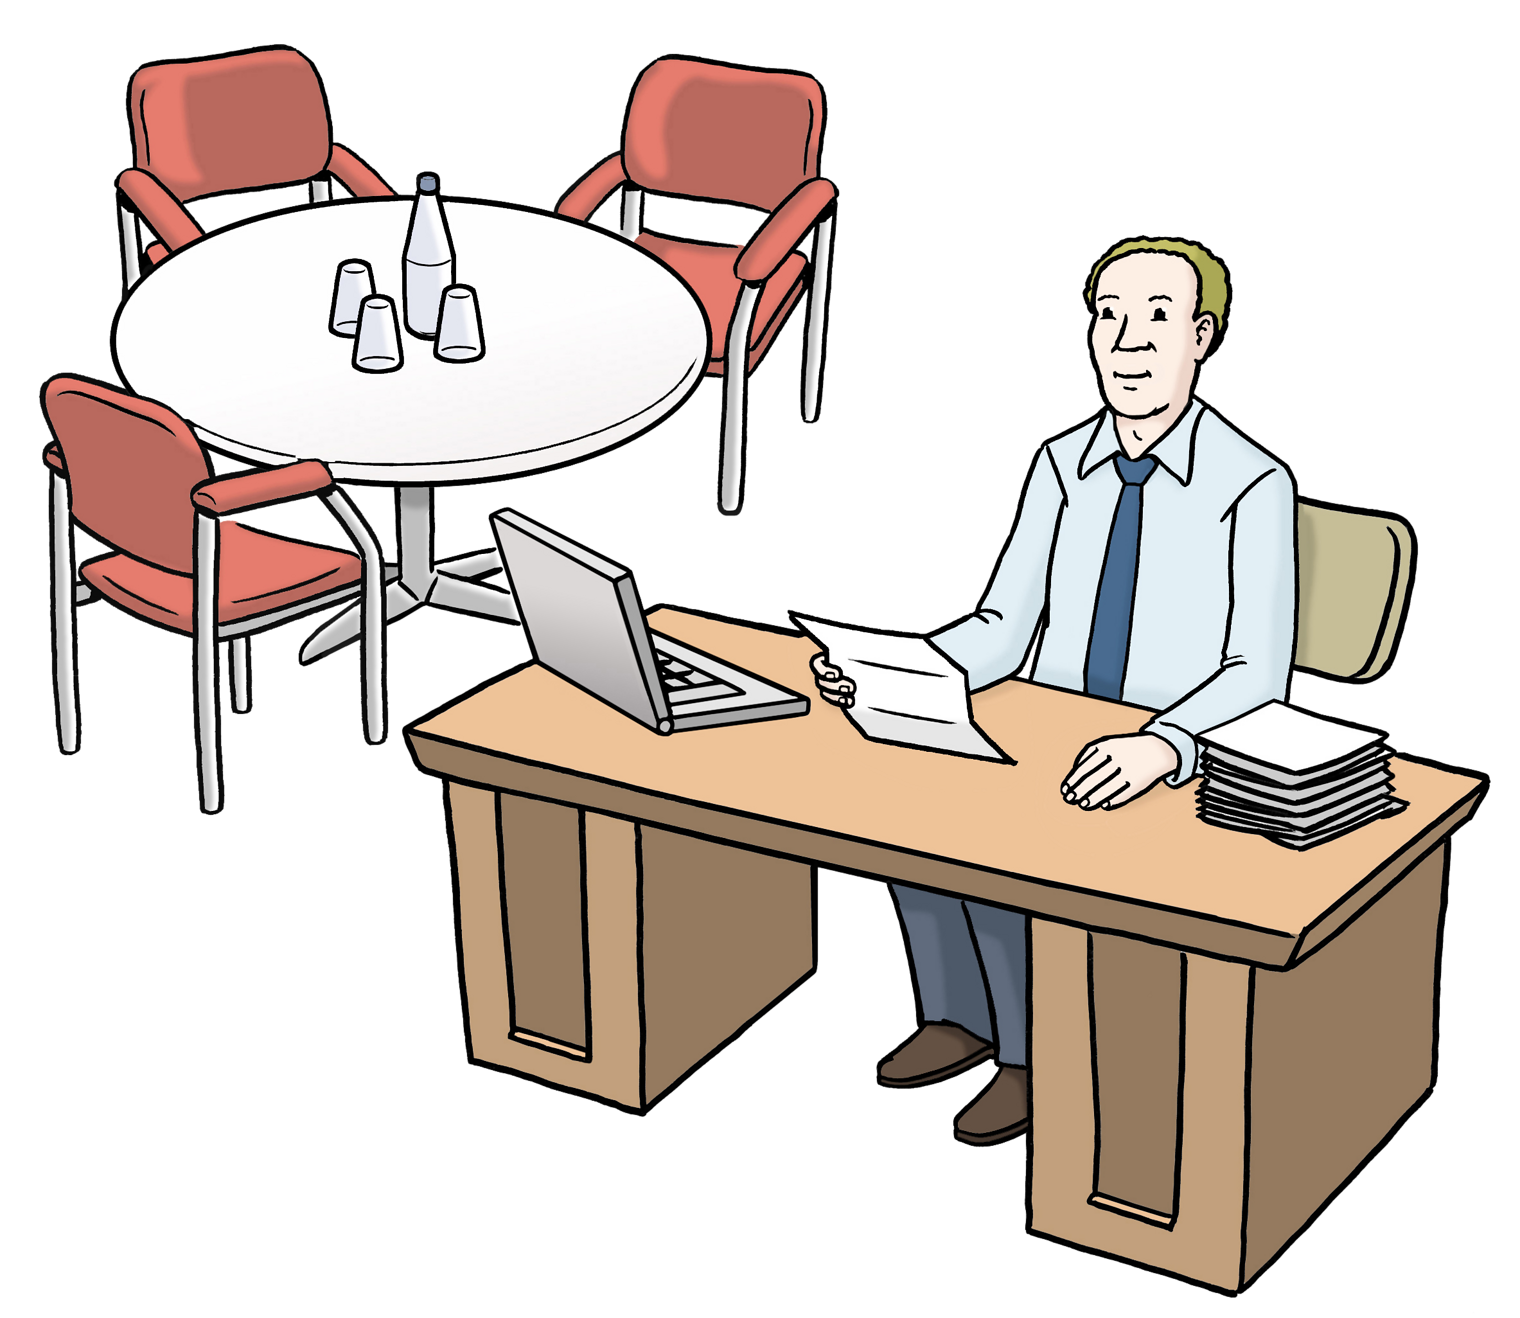 Mann sitzt mit einem Papier in der Hand am Schreibtisch, darauf ein Laptop und ein Stapel Unterlagen, links davon ein runder Tisch mit Getränken und Stühlen